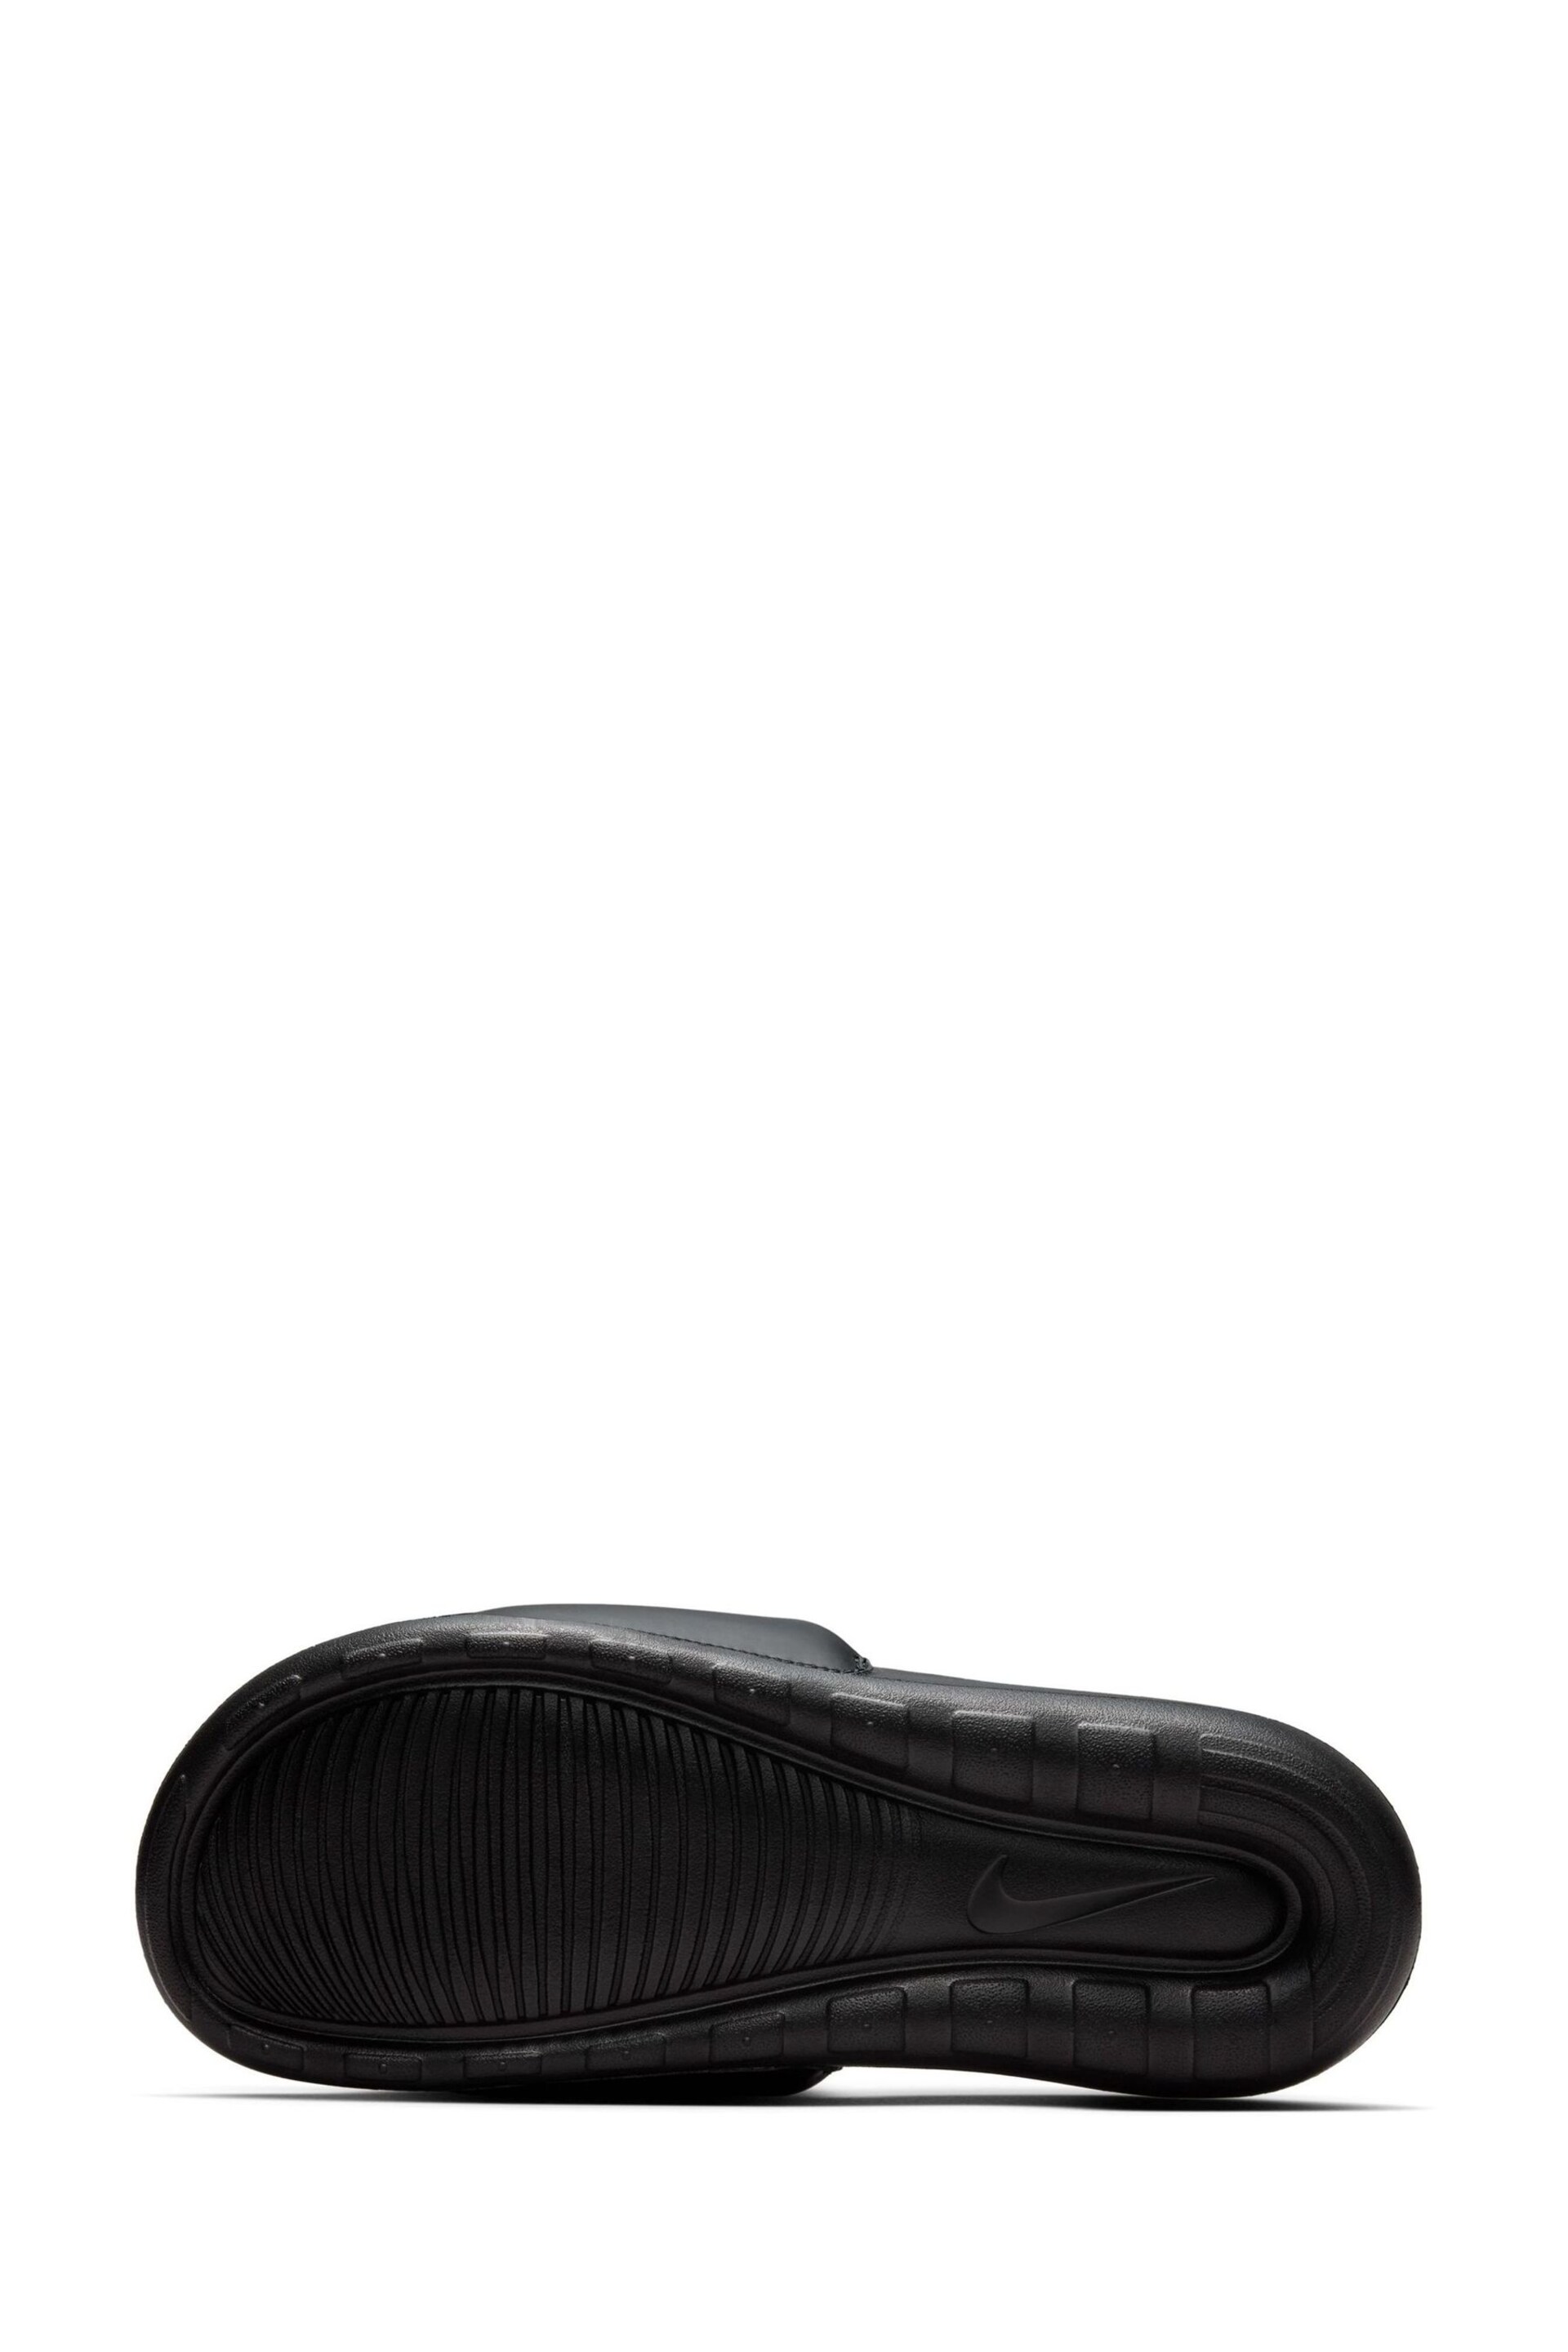 Nike Coal Black Victori One Sliders - Image 6 of 7